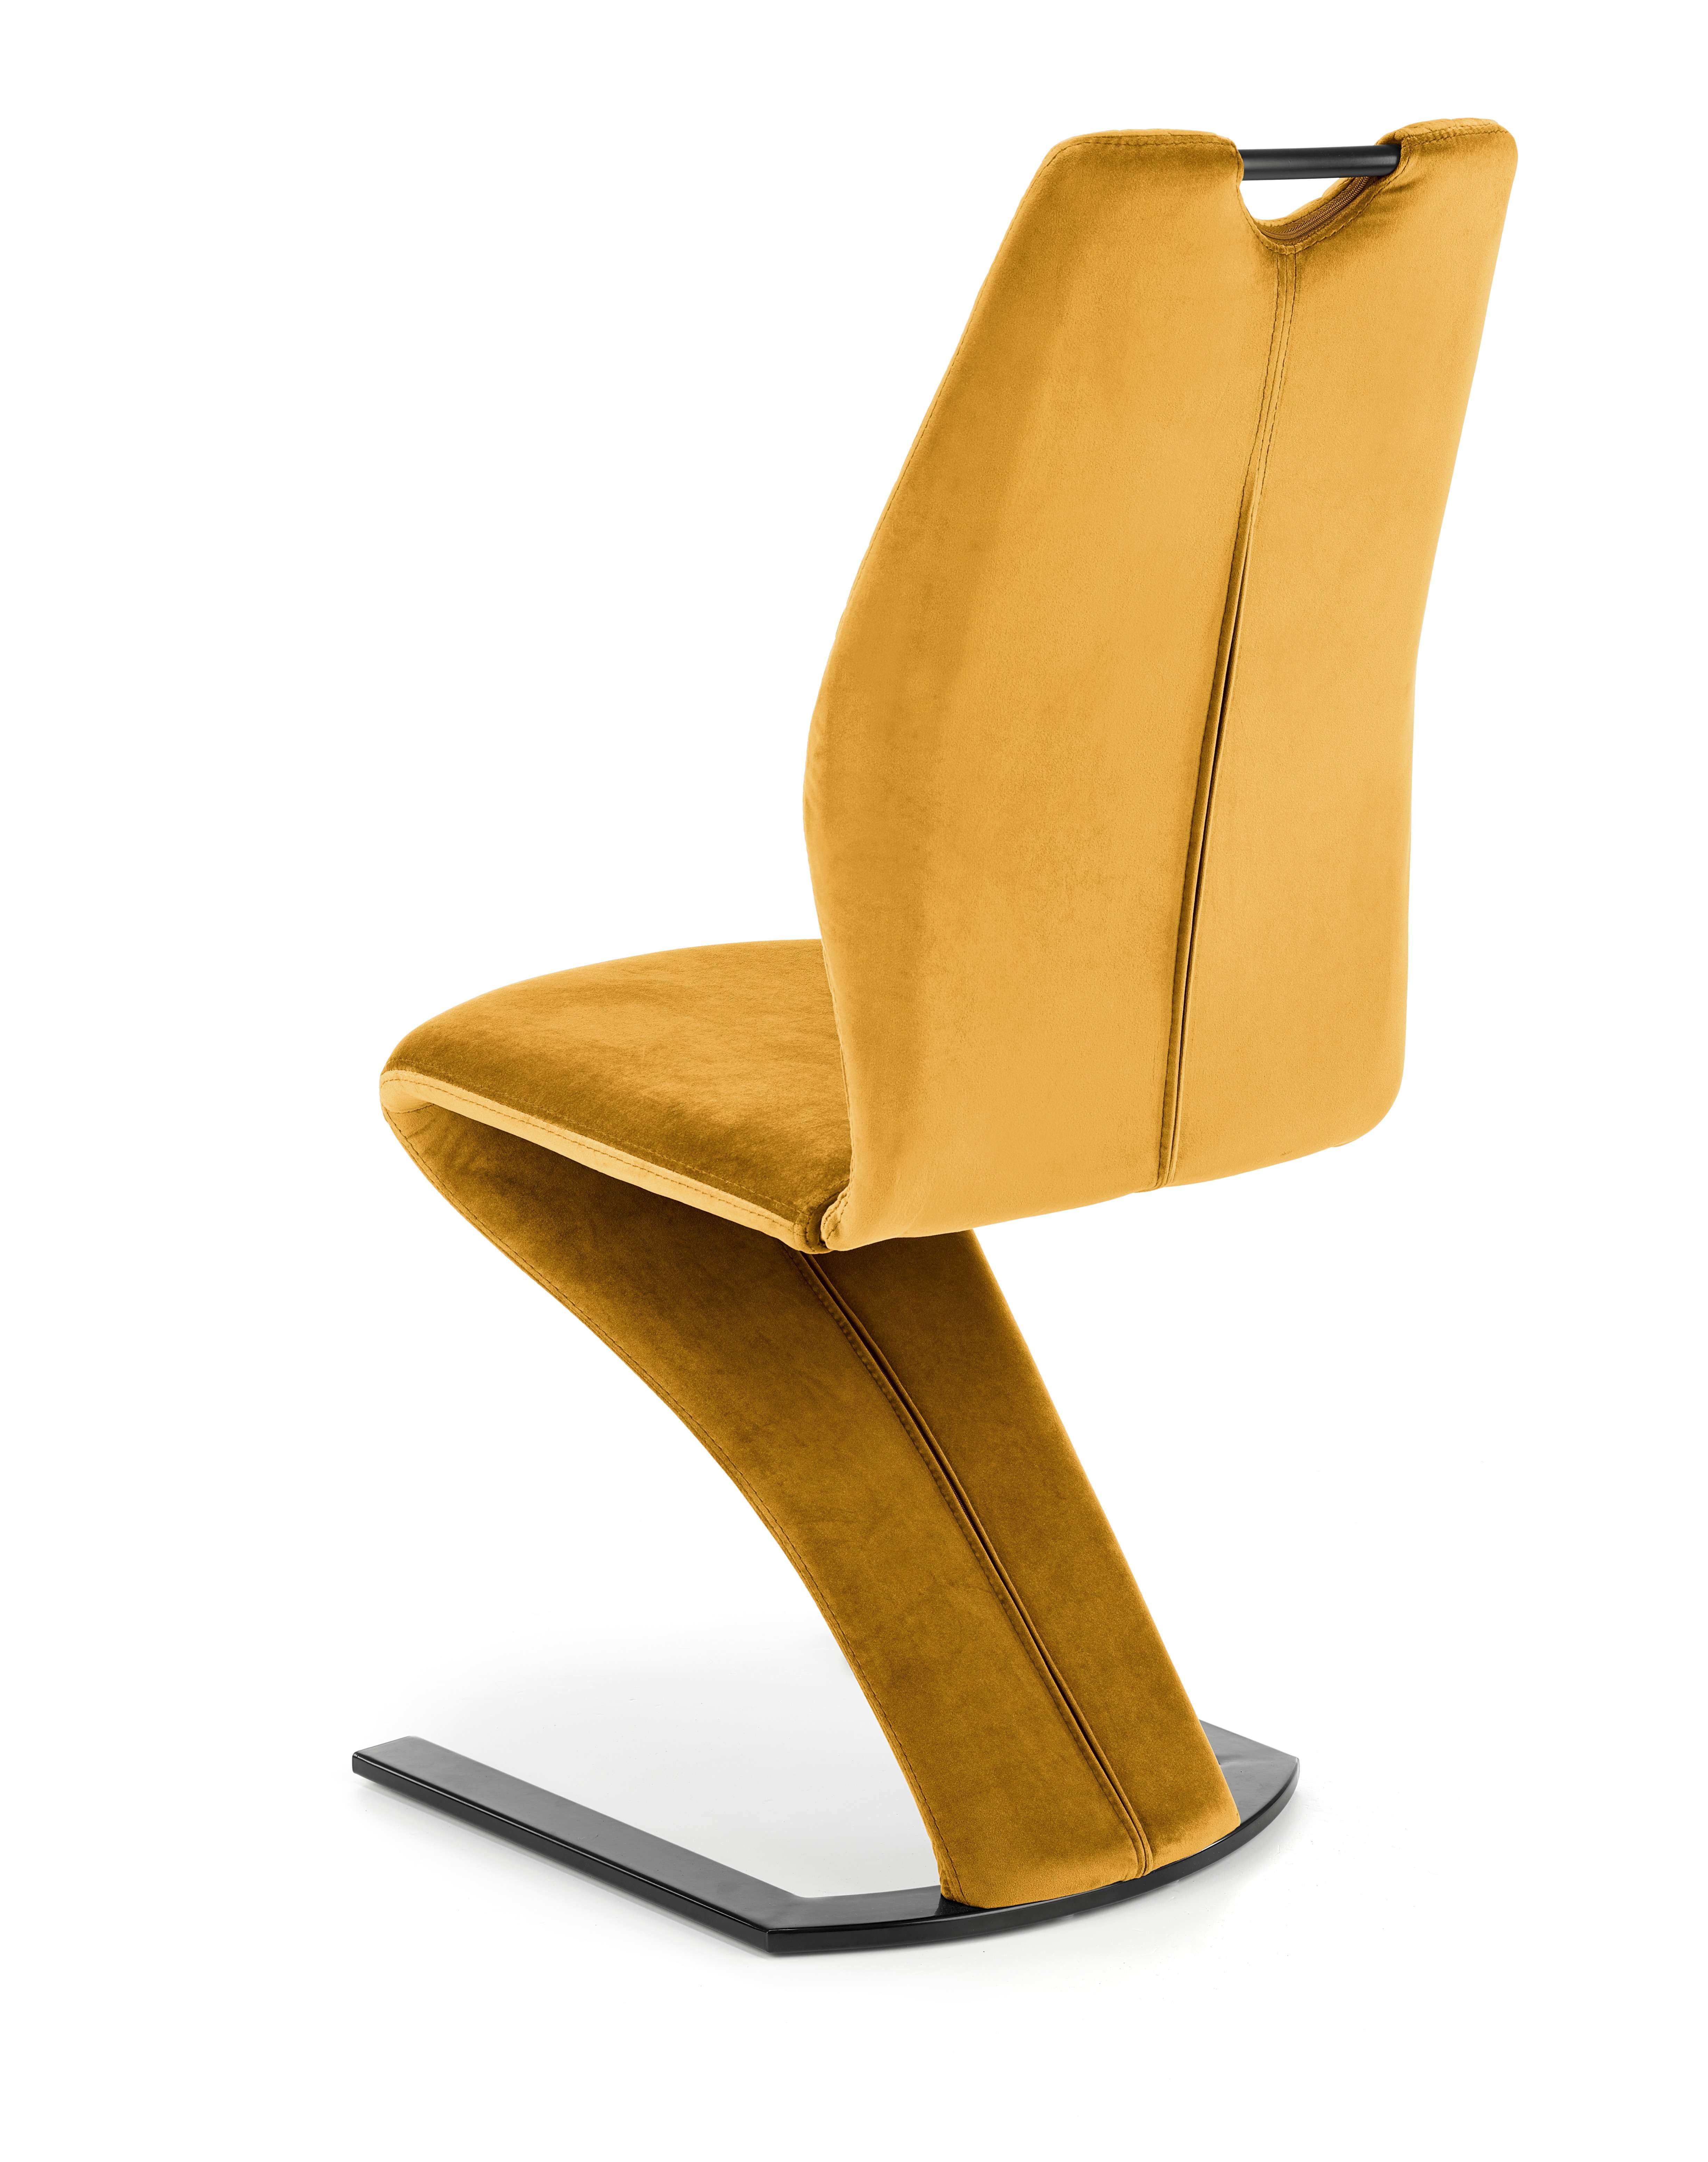 K442 szék - mustár (1p=2db) k442 Židle hořčice